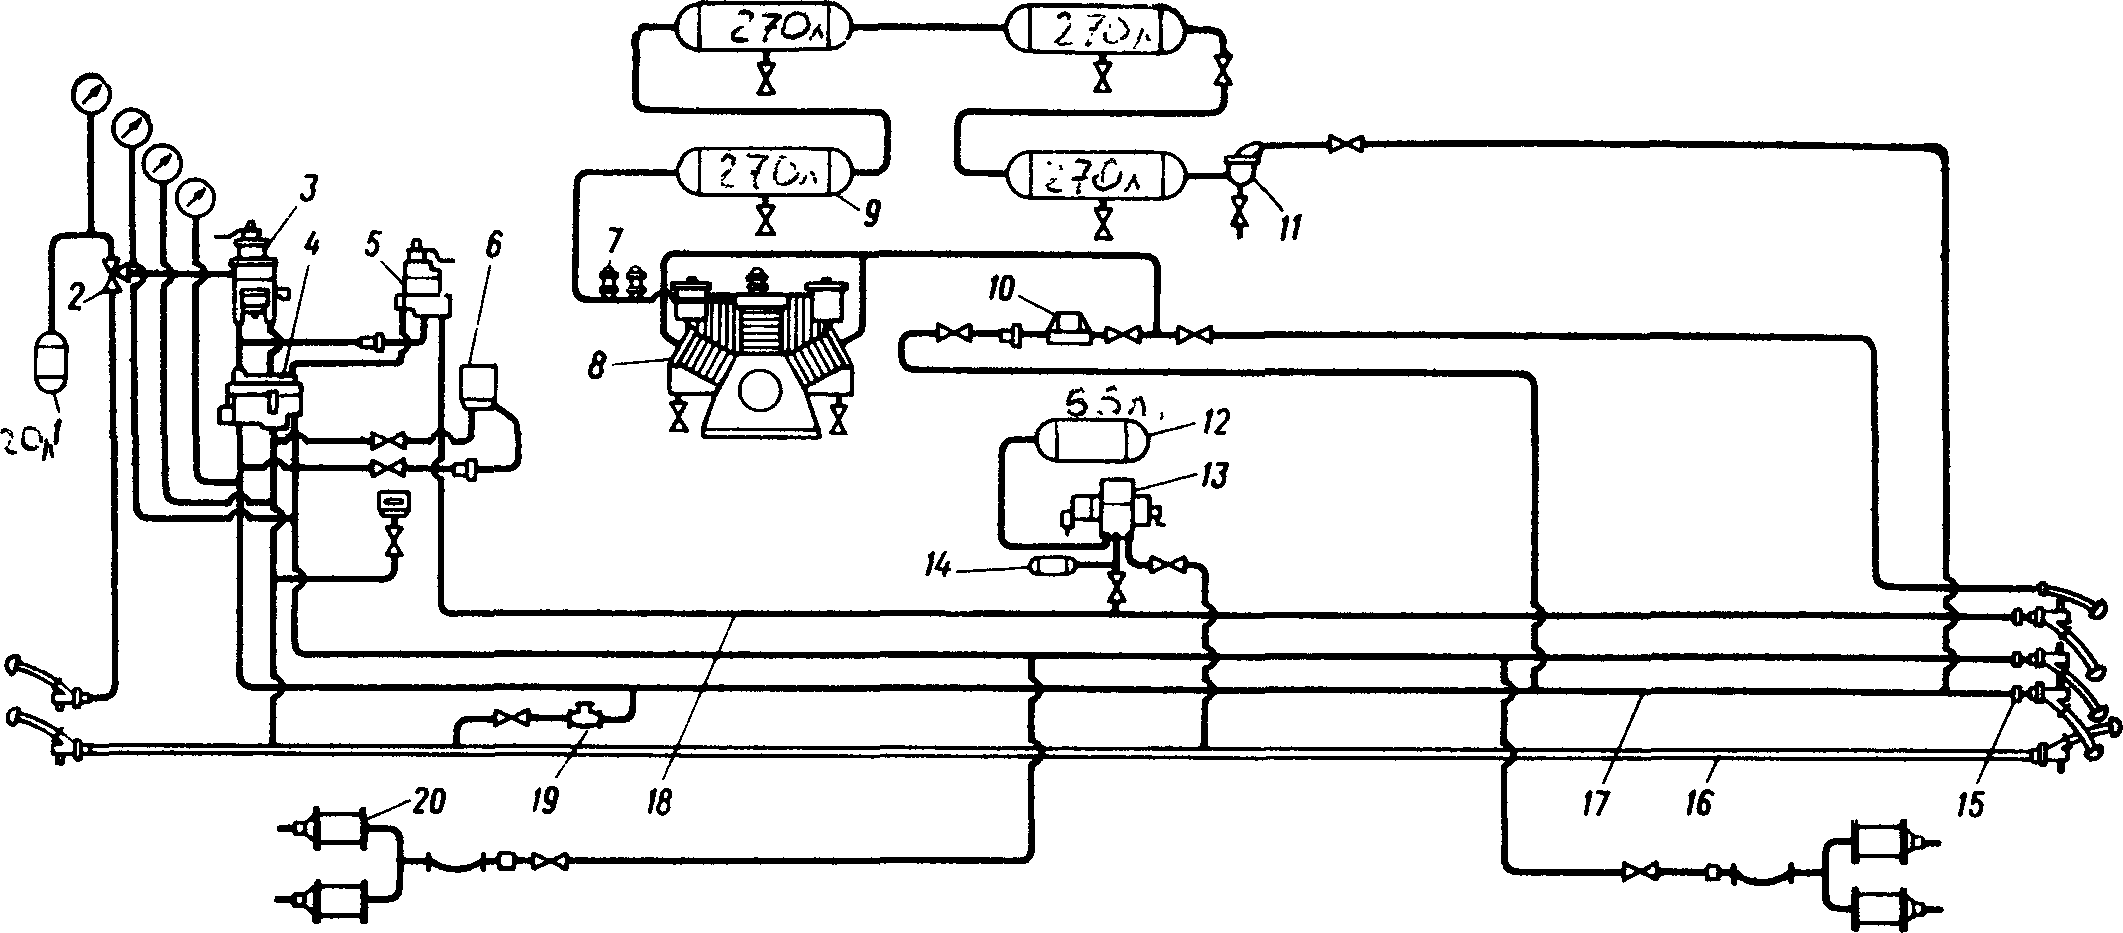 Схема тормозного оборудования тепловоза 2ТЭ10Л